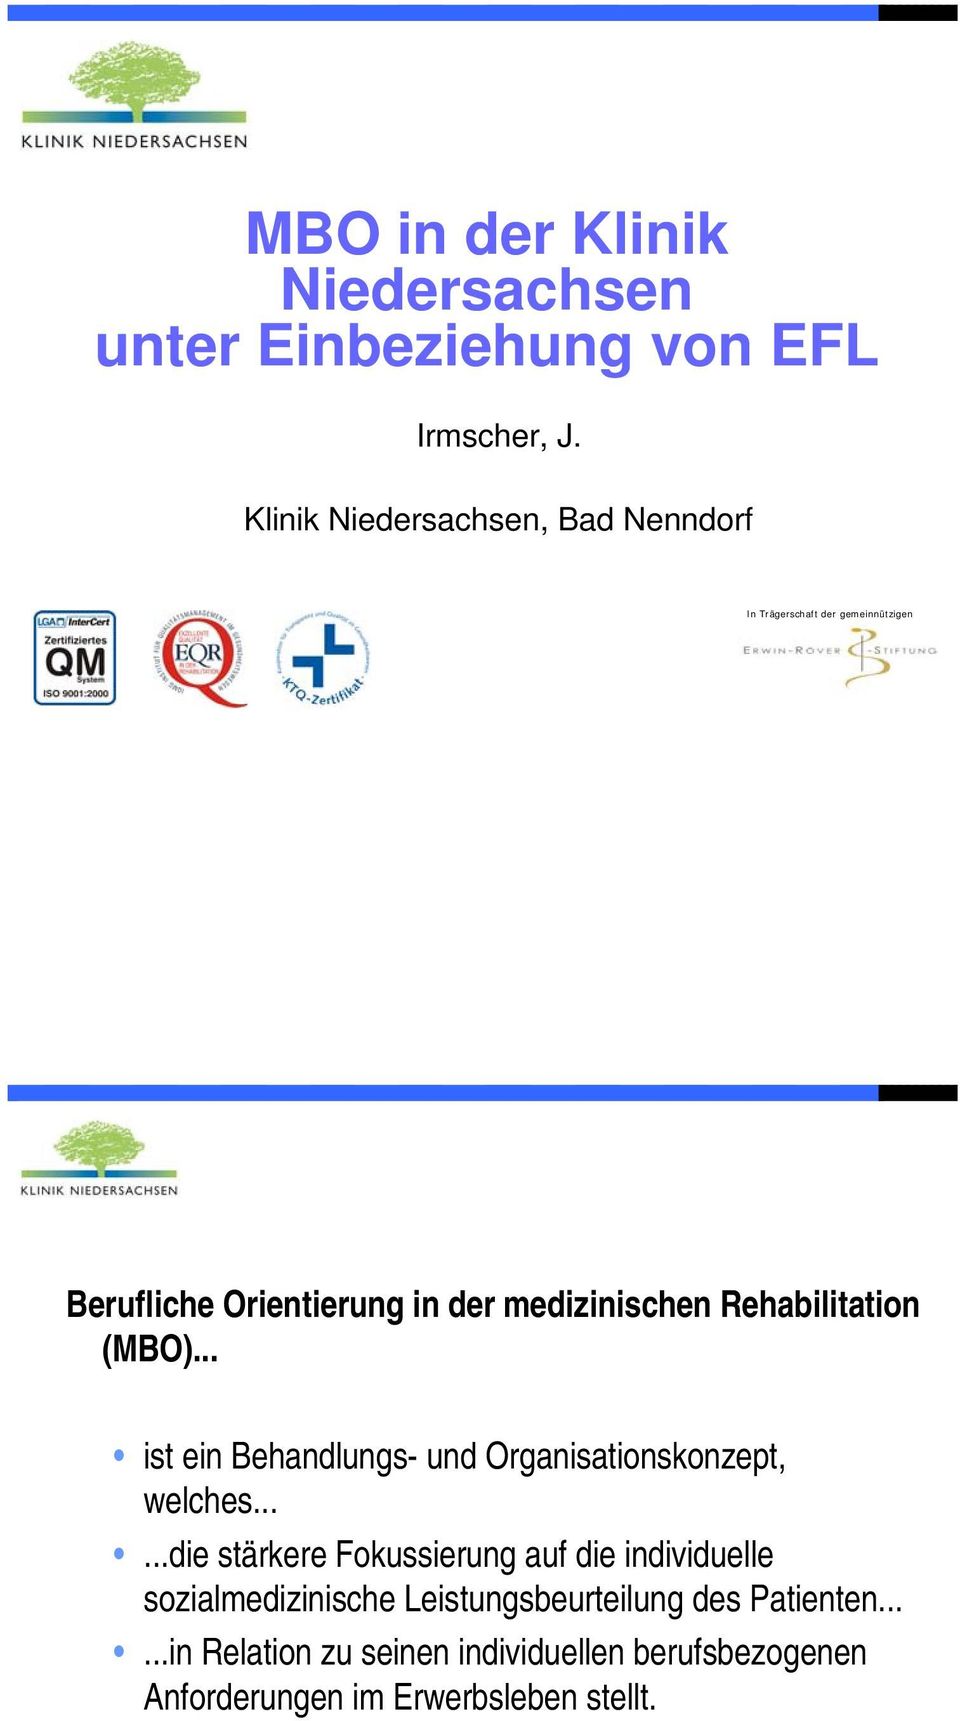 Rehabilitation (MBO)... ist ein Behandlungs- und Organisationskonzept, welches.